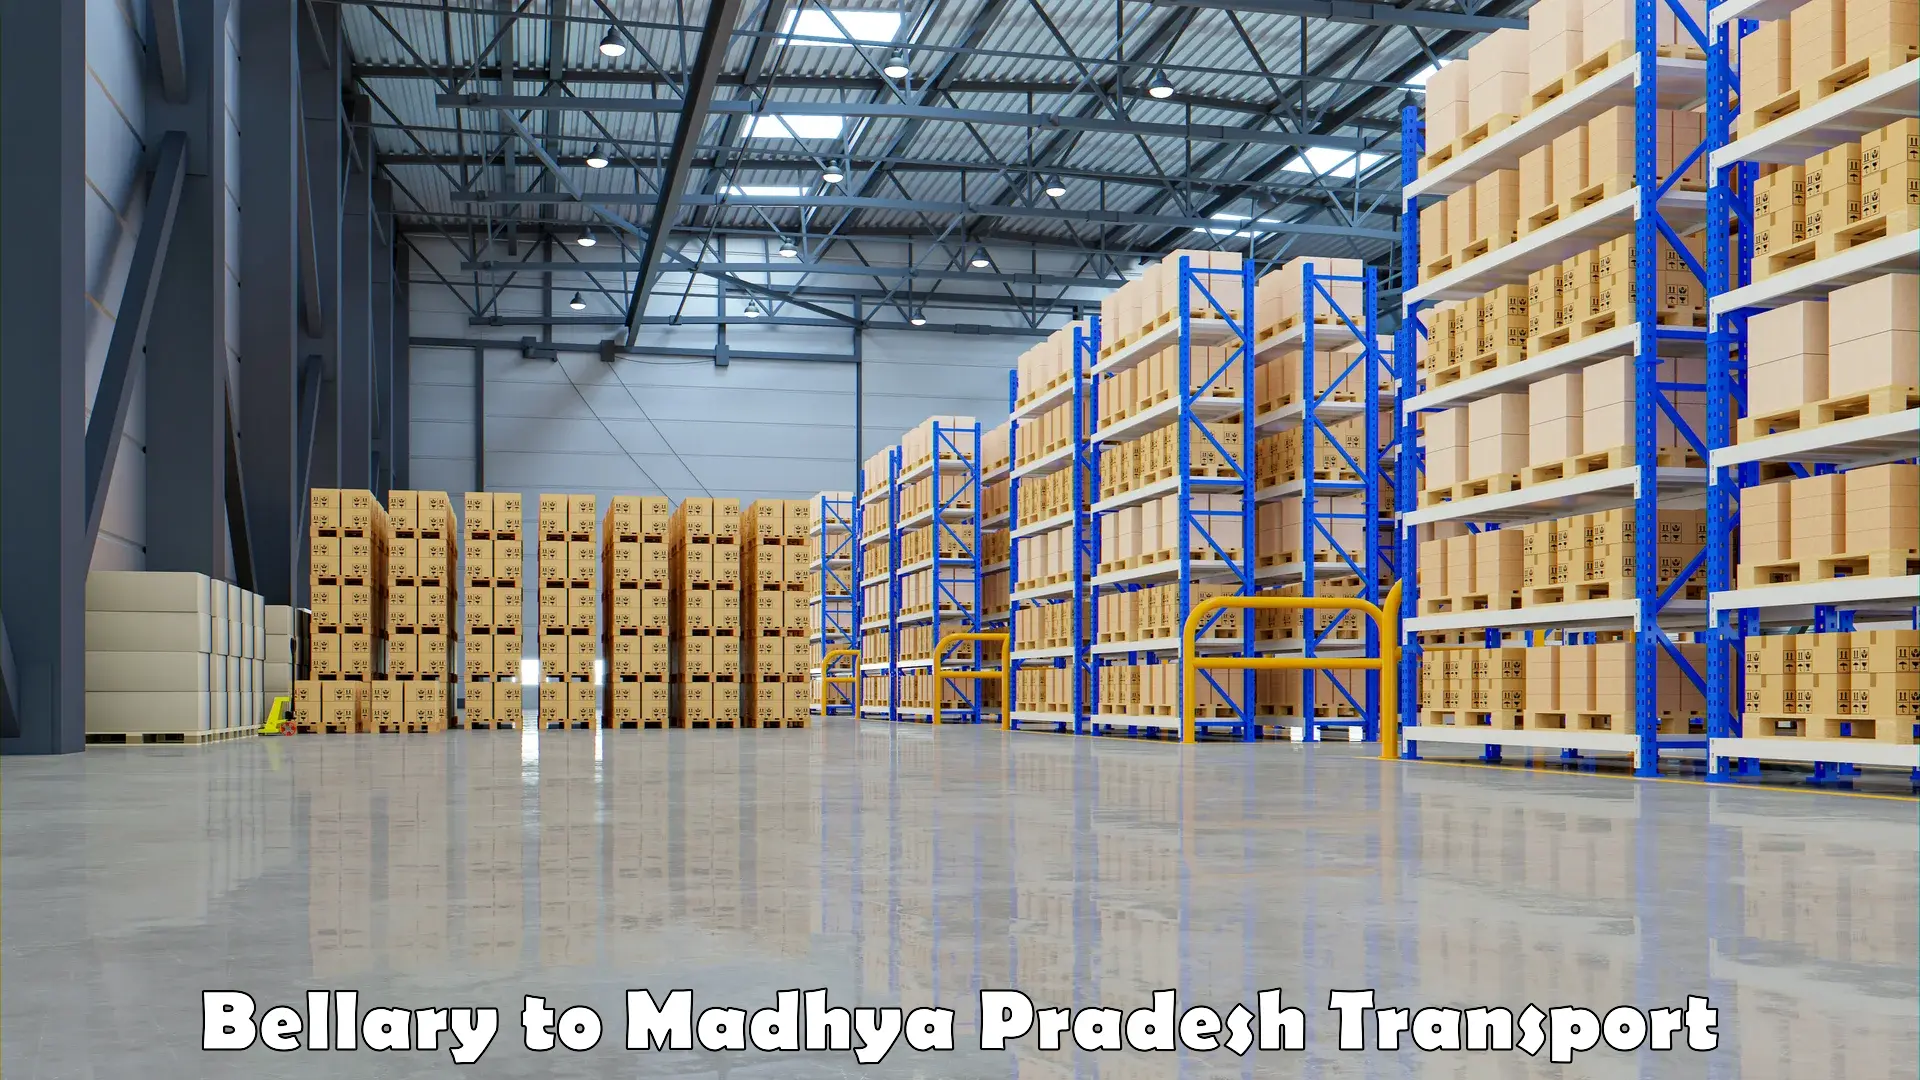 Truck transport companies in India Bellary to Madhya Pradesh